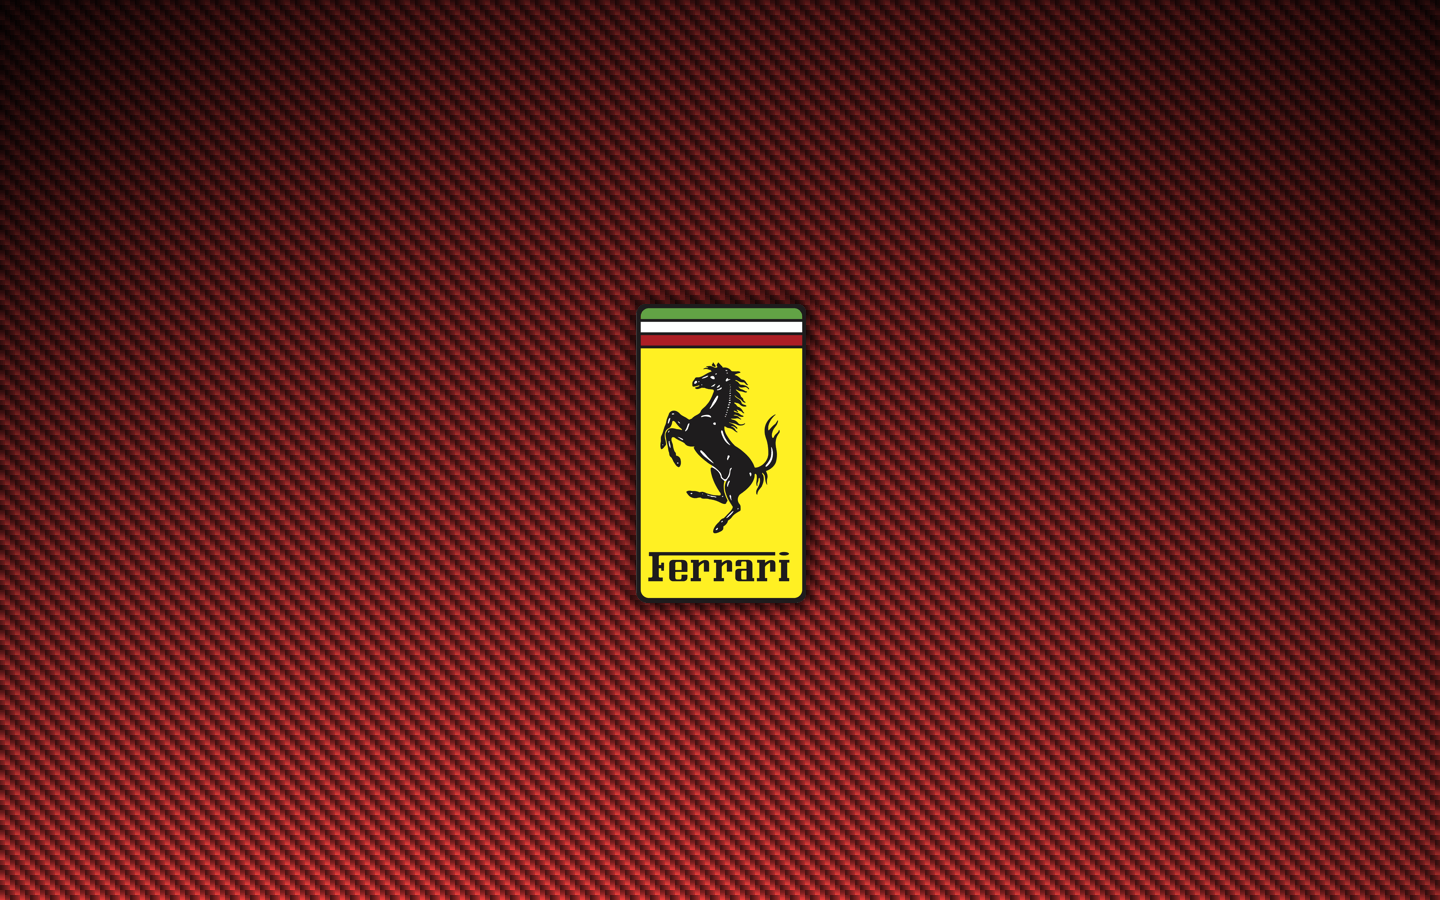 Ferrari Carbon Fiber Wallpapers Top Free Ferrari Carbon Fiber Backgrounds Wallpaperaccess